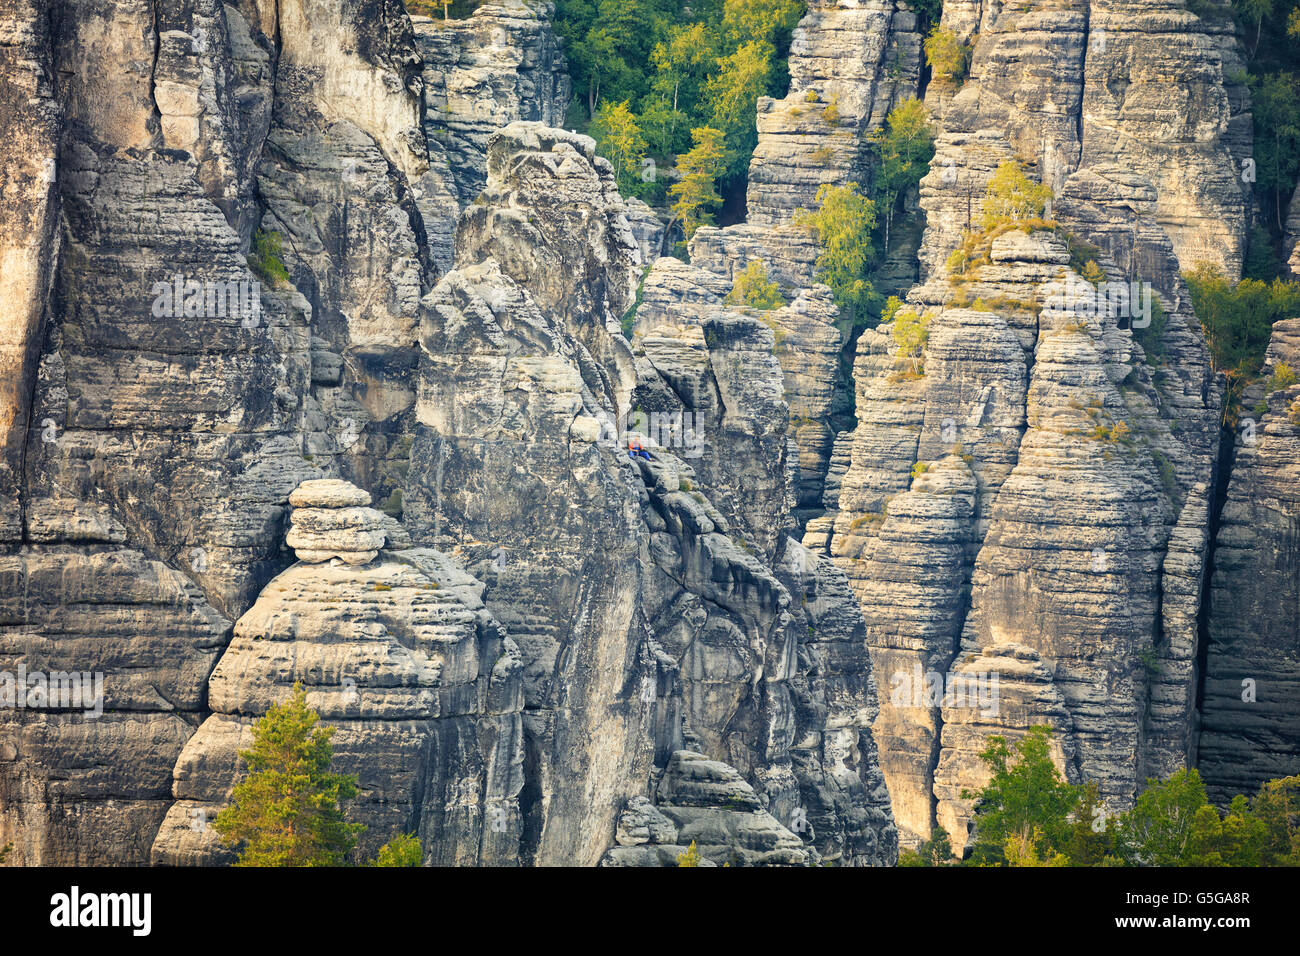 La Suisse saxonne parc national. petit grimpeur sur le rocher, Allemagne Banque D'Images